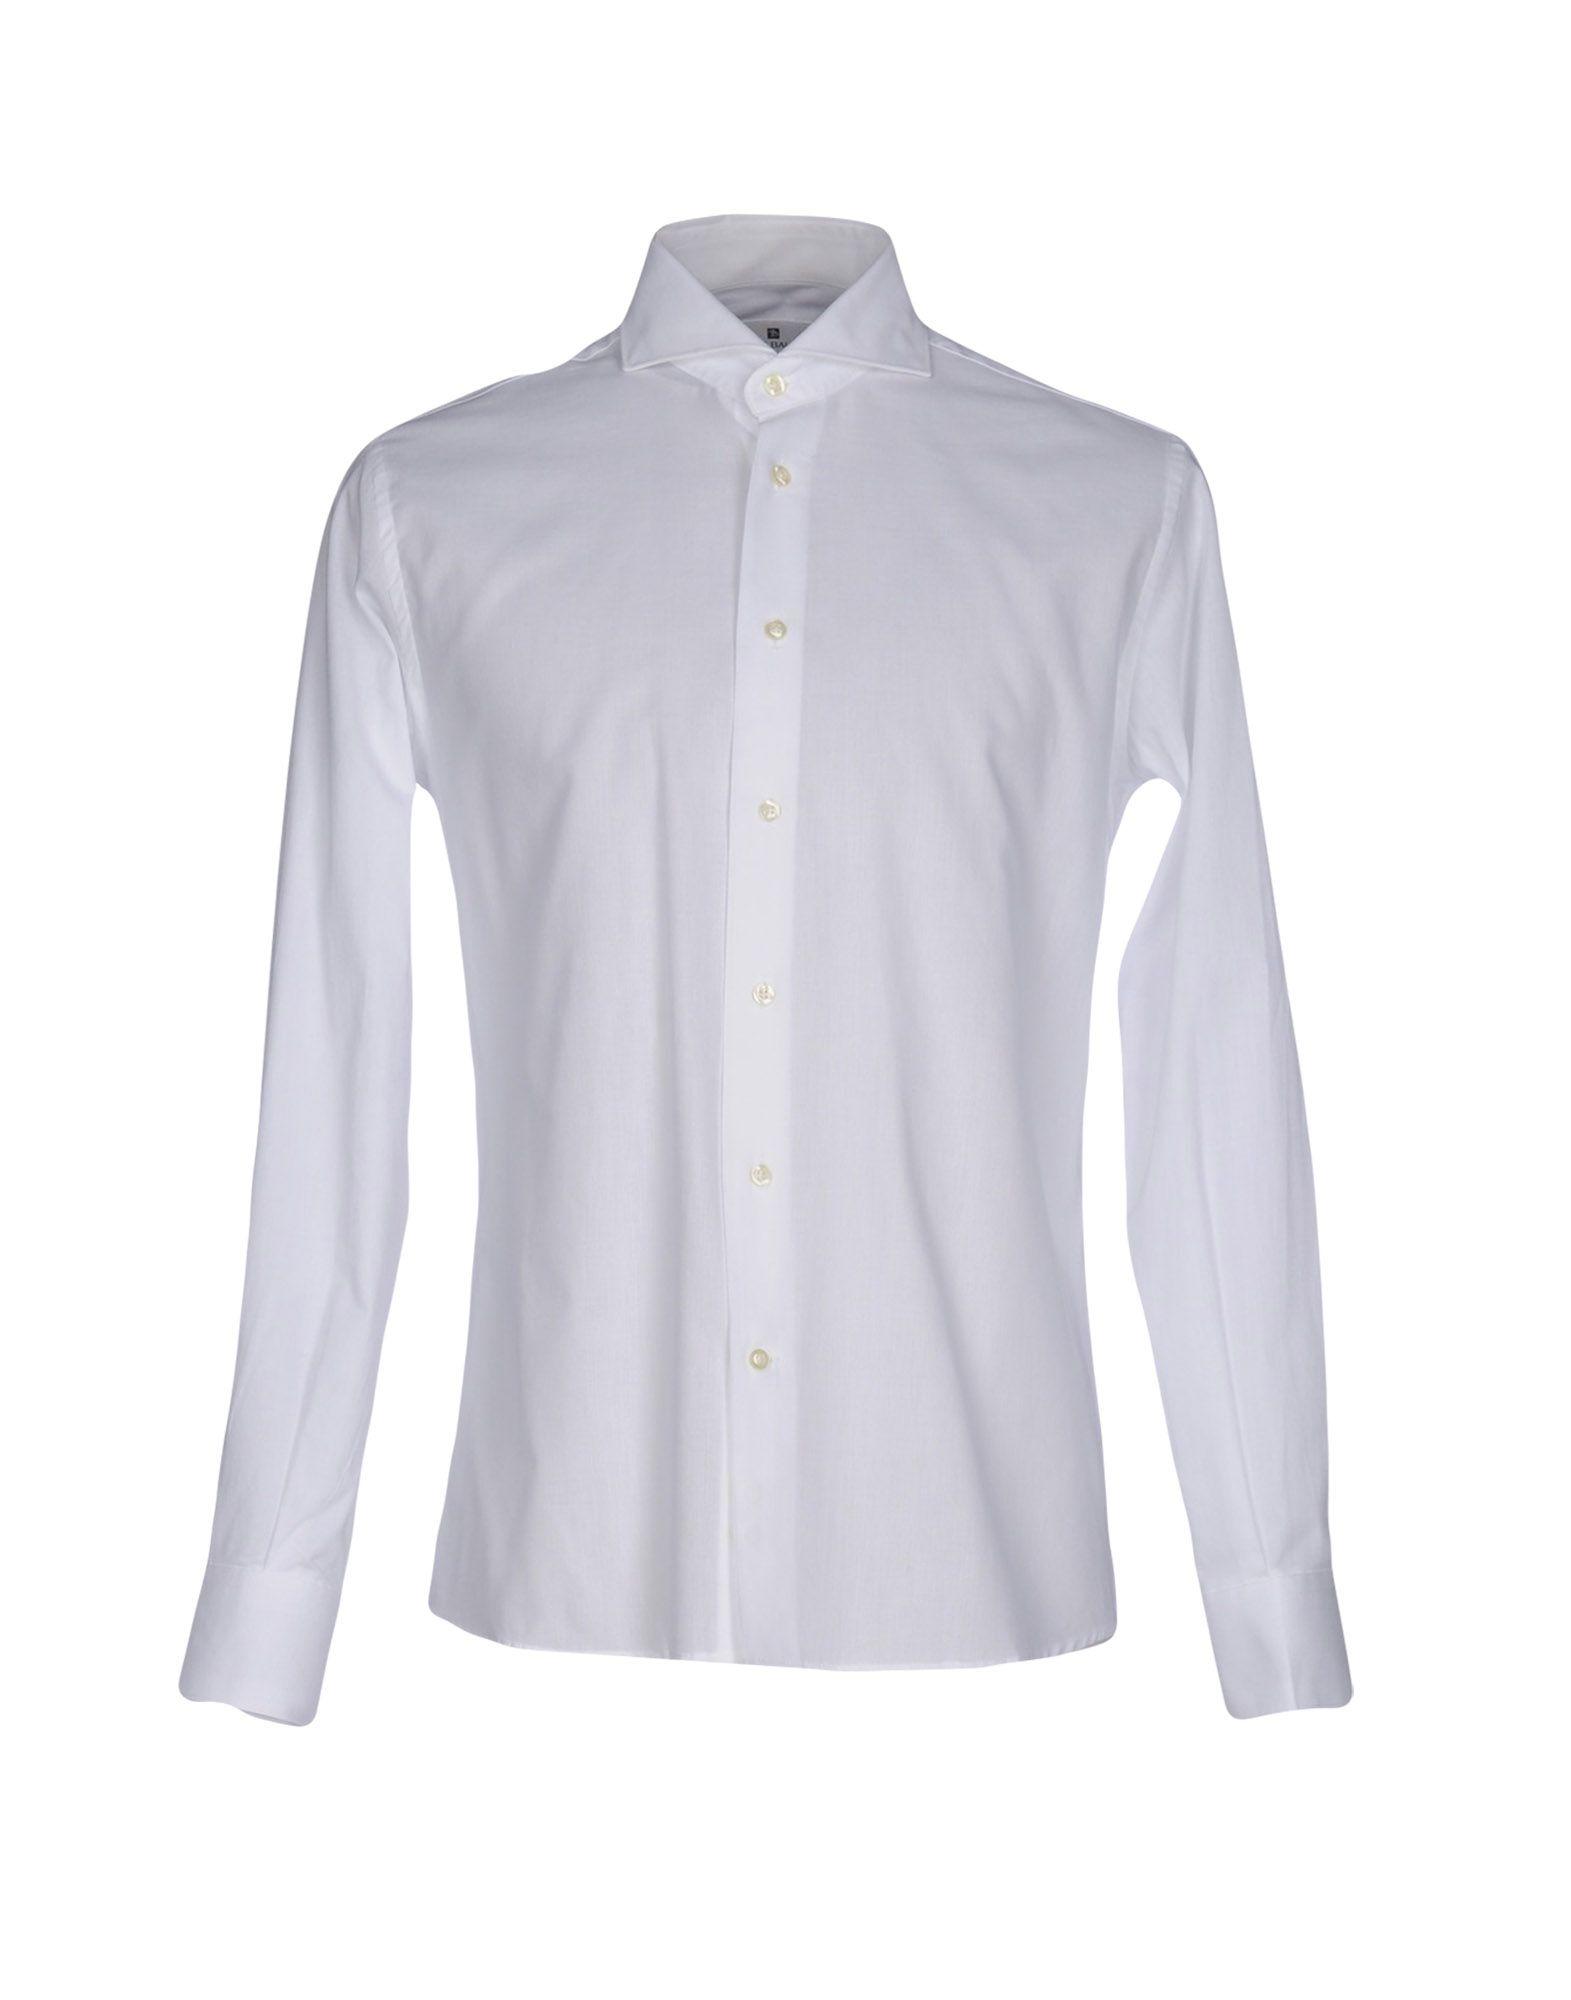 Lyst - Balmain Shirt in White for Men